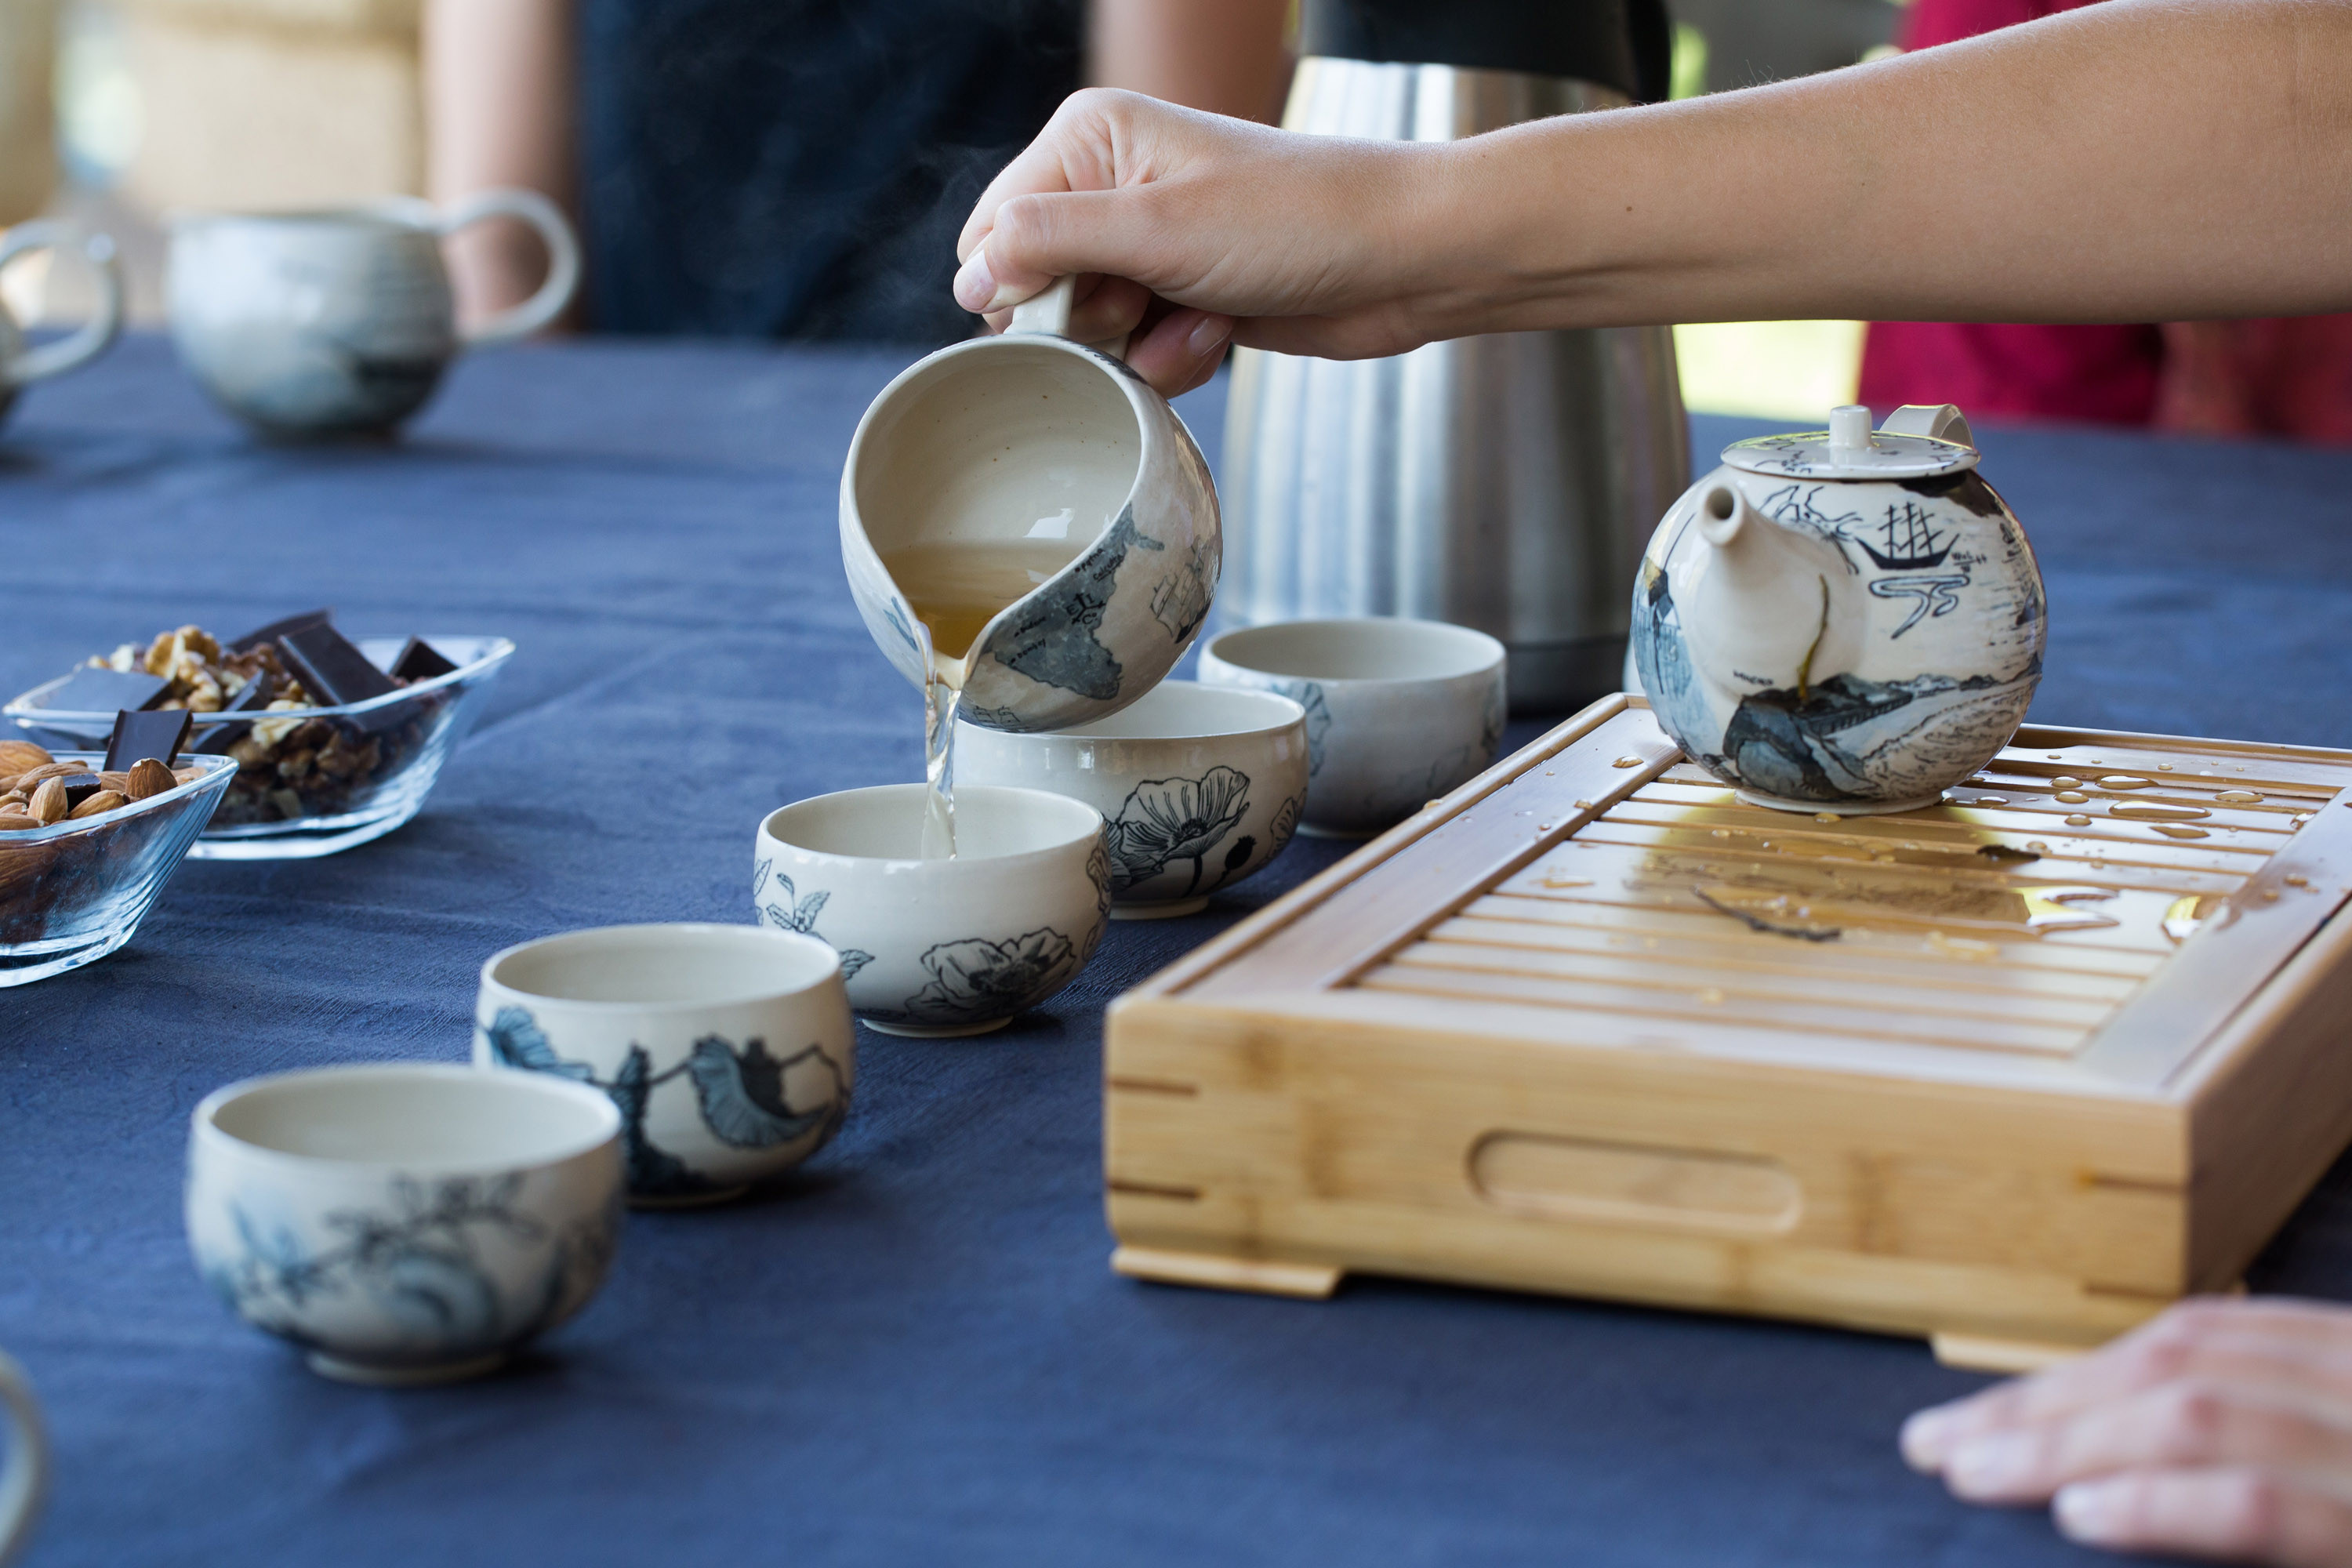 Man sieht weisses Keramikgeschirr mit blauer Malerei. Eine Hand giesst gerade Tee von einer kleinen Kanne in eine Tasse.